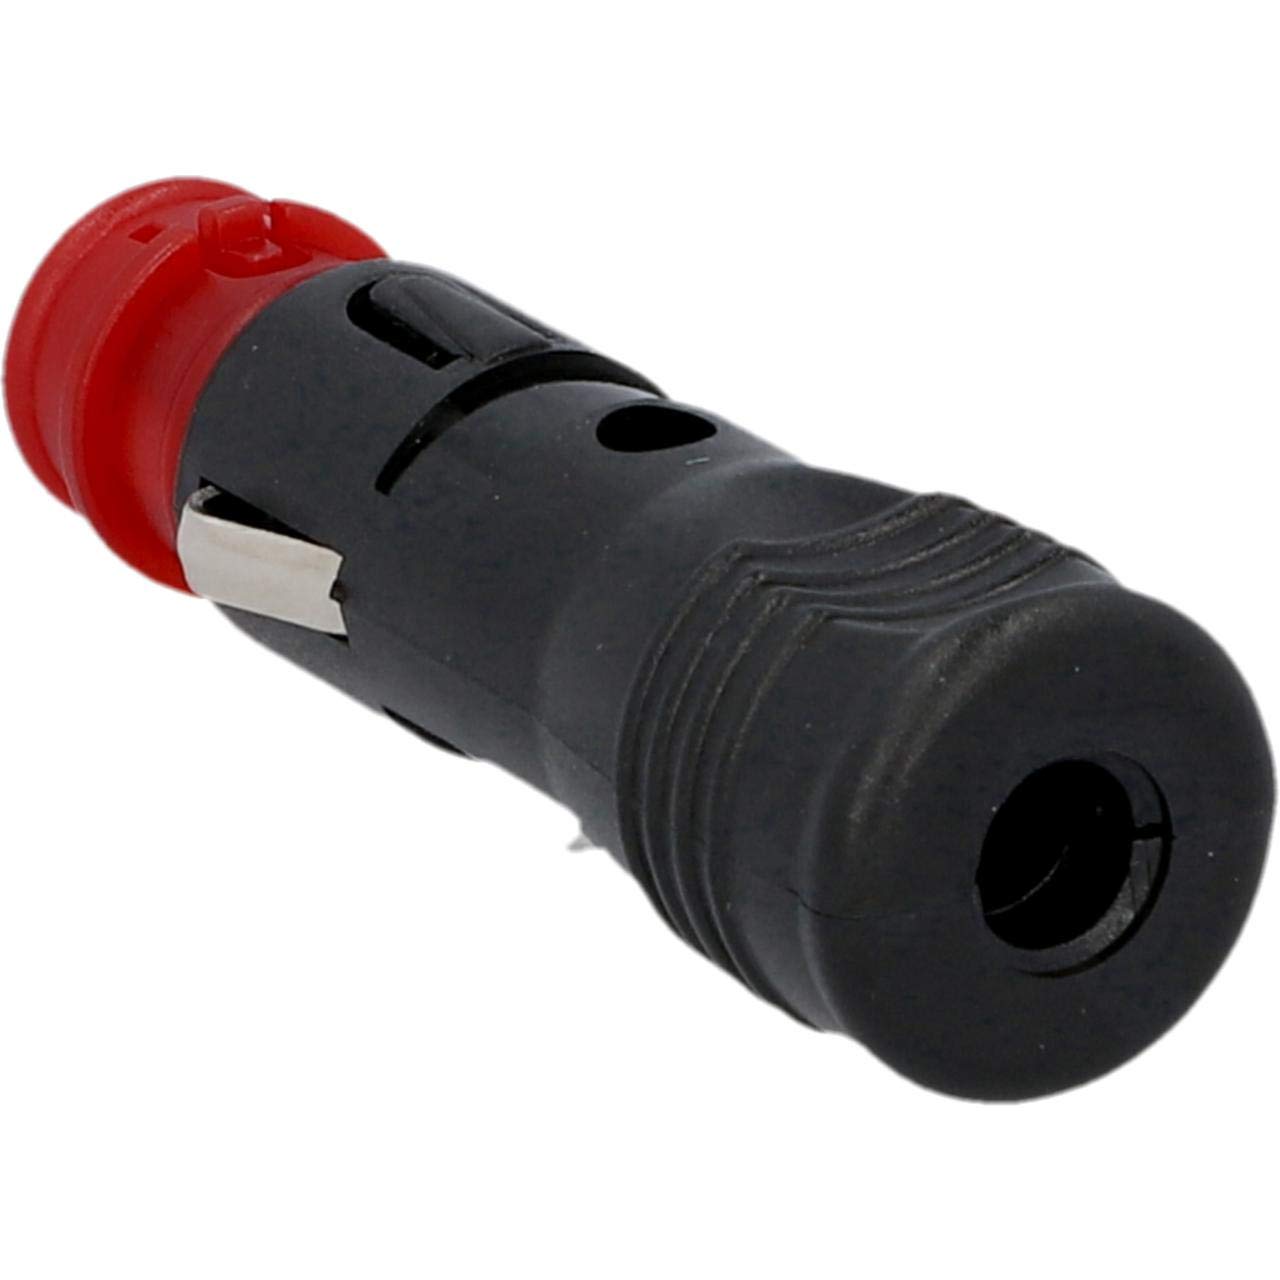 Cartrend 10457 Universal-Stecker für alle Zigarettenanzünder und Steckdosen nach DIN ISO 4165 mit Sicherung, 8000 mA von cartrend